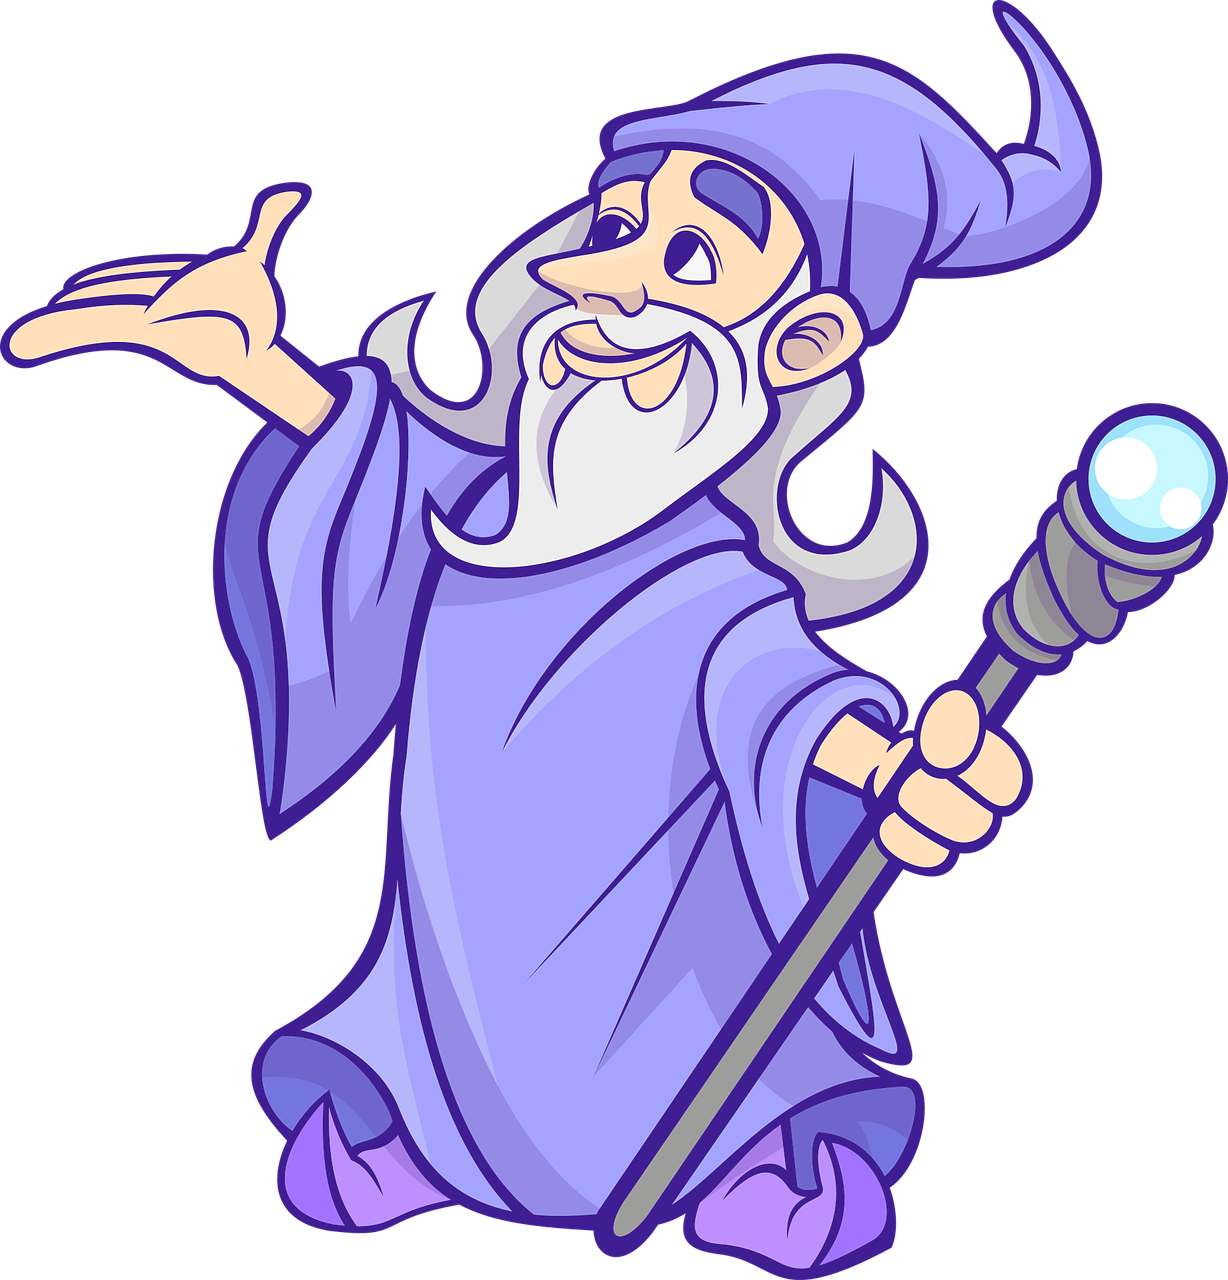 wizard-g1d2b82156_1280 (c) GraphicMama-team (www.pixabay.de)